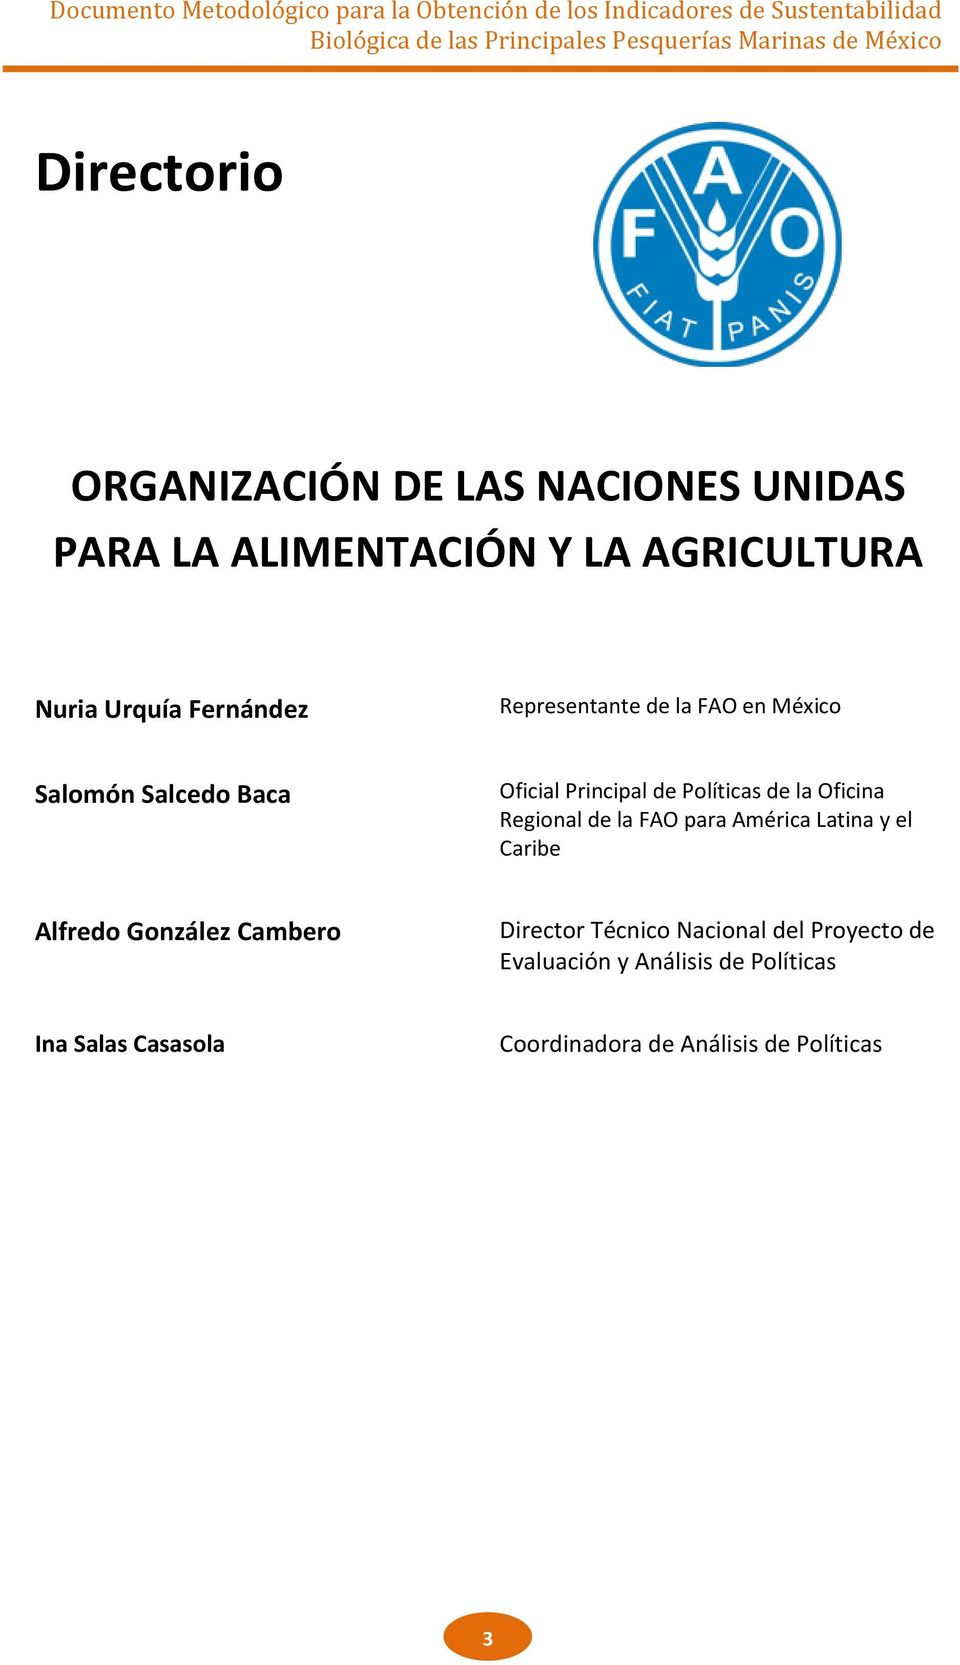 Oficina Regional de la FAO para América Latina y el Caribe Alfredo González Cambero Director Técnico